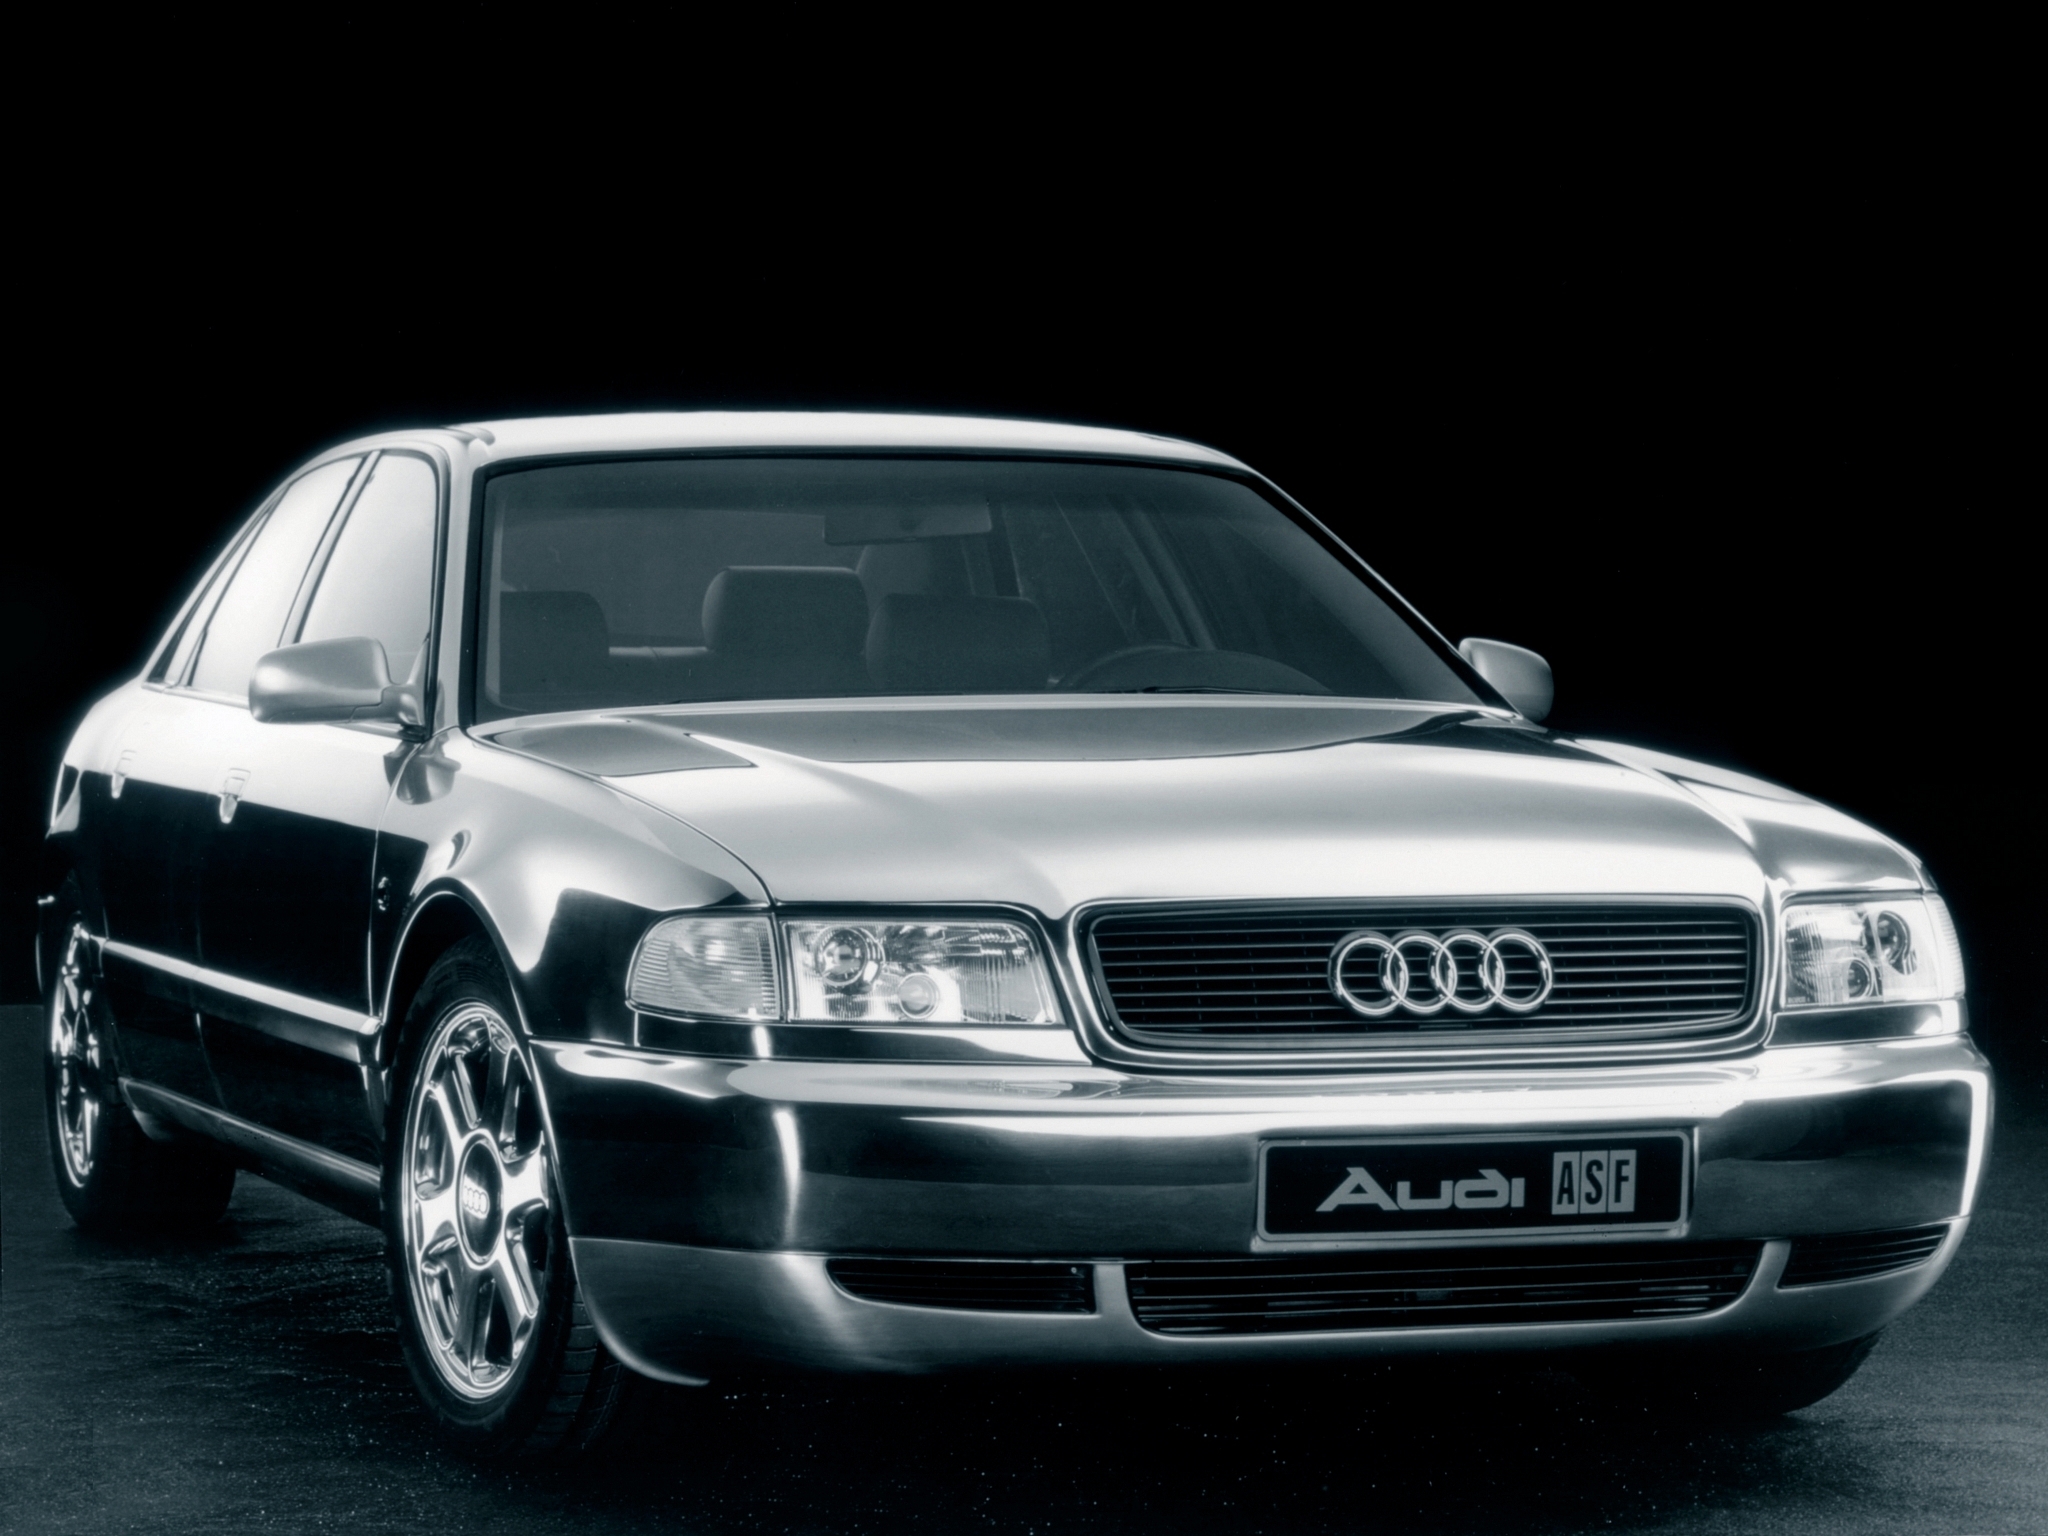 Audi Asf Concept For Your Desktop